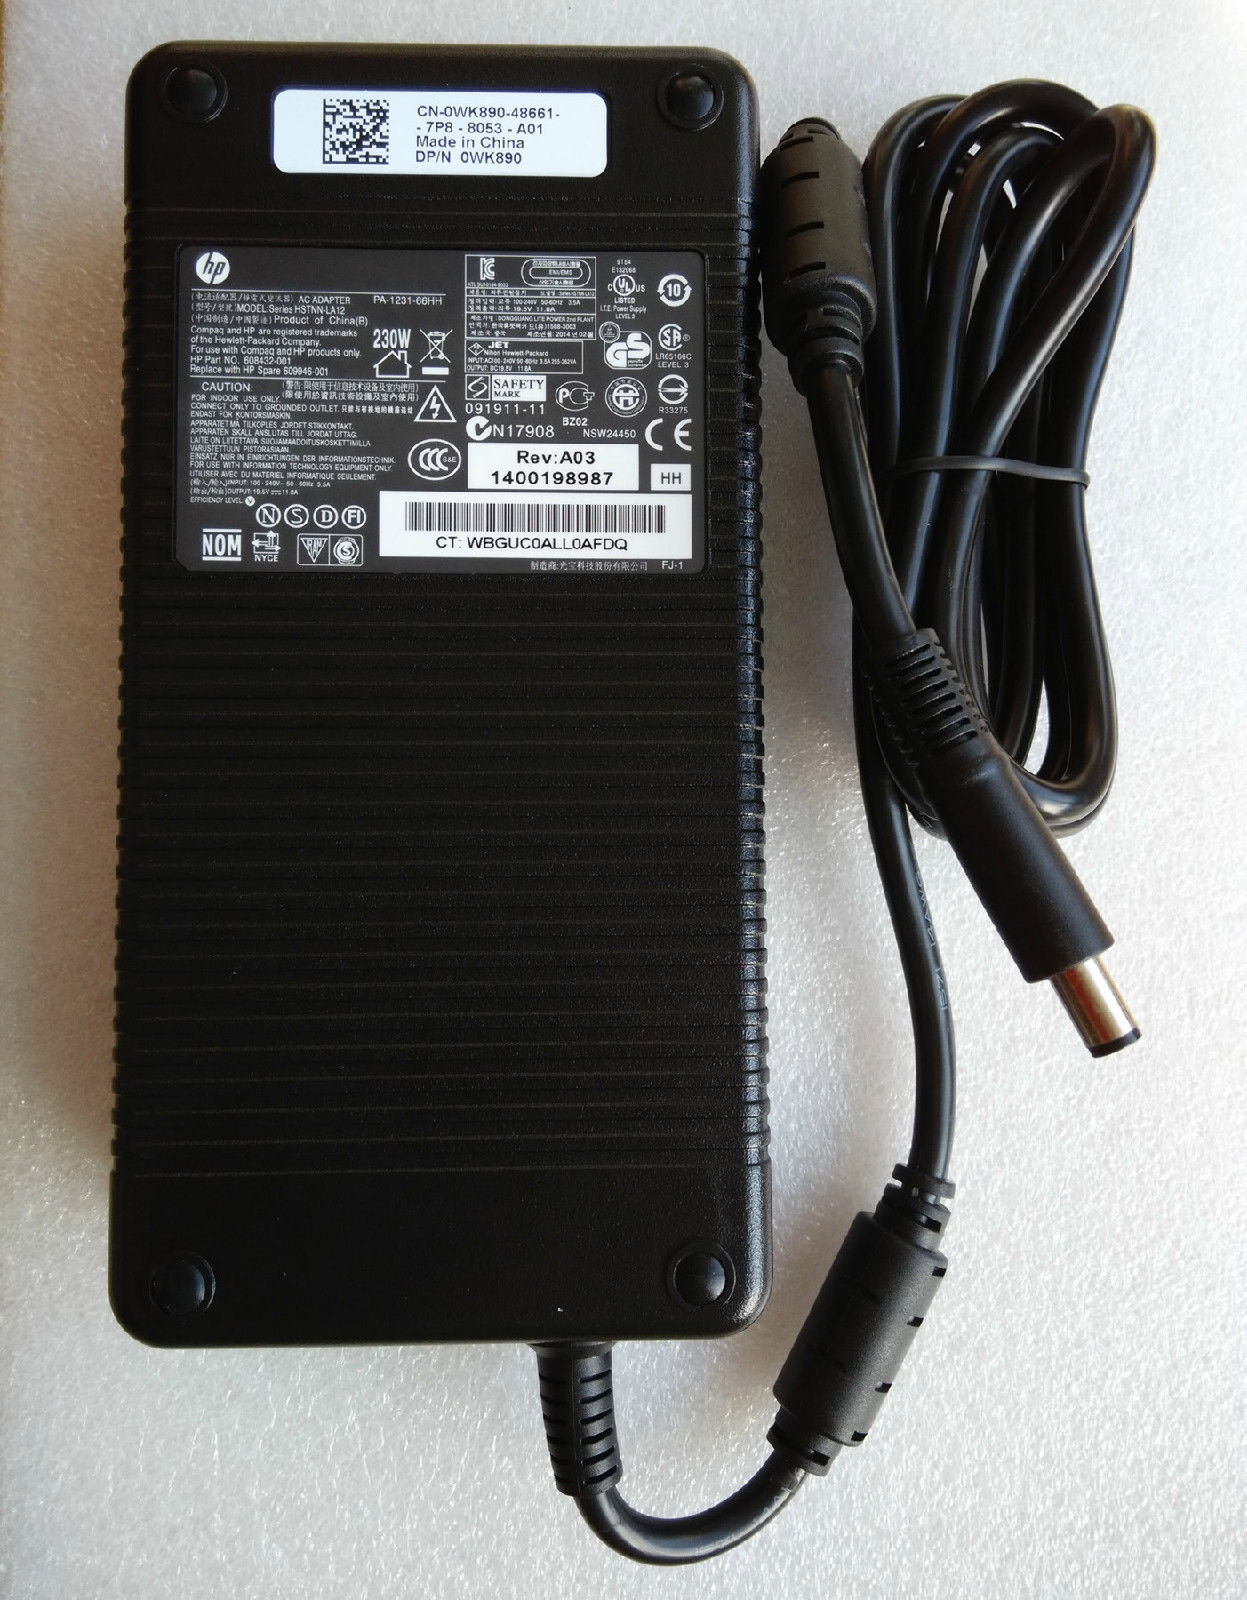 HP 19.5V 11.8A EliteBook 8740w Mobile Workstation AC Adapter